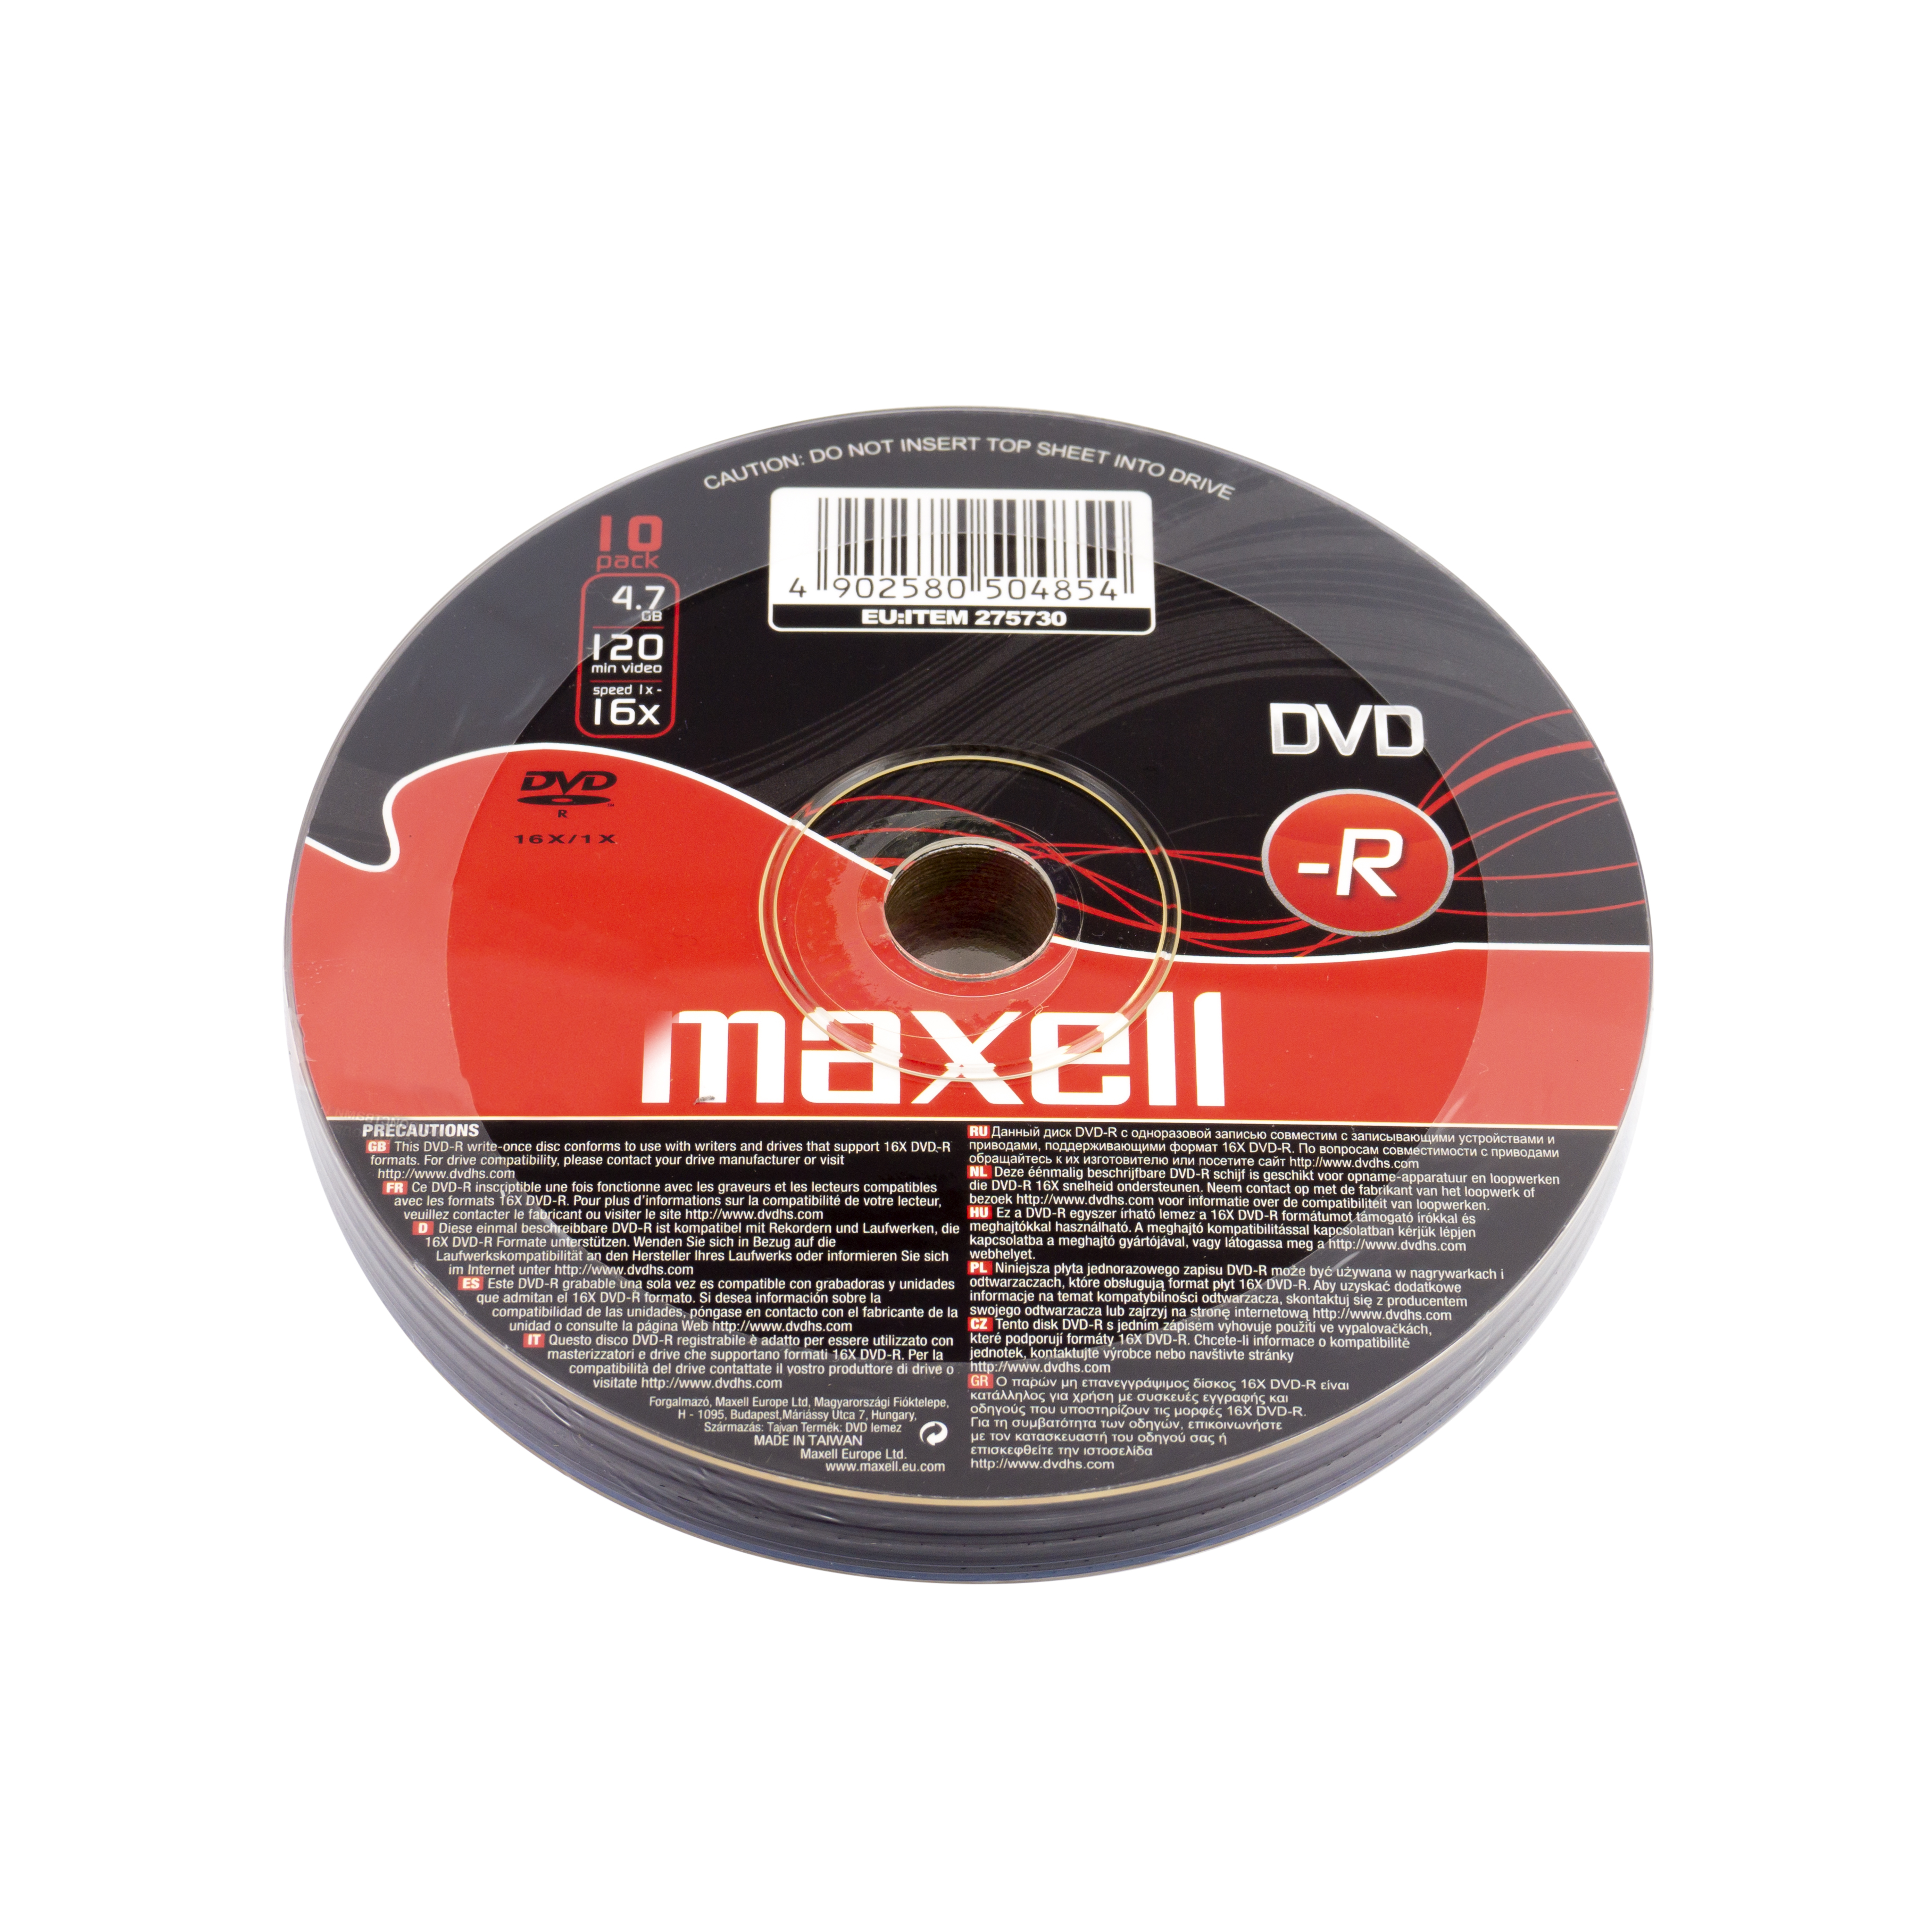 DVD-R 47 10 Pack Shrink - Maxell